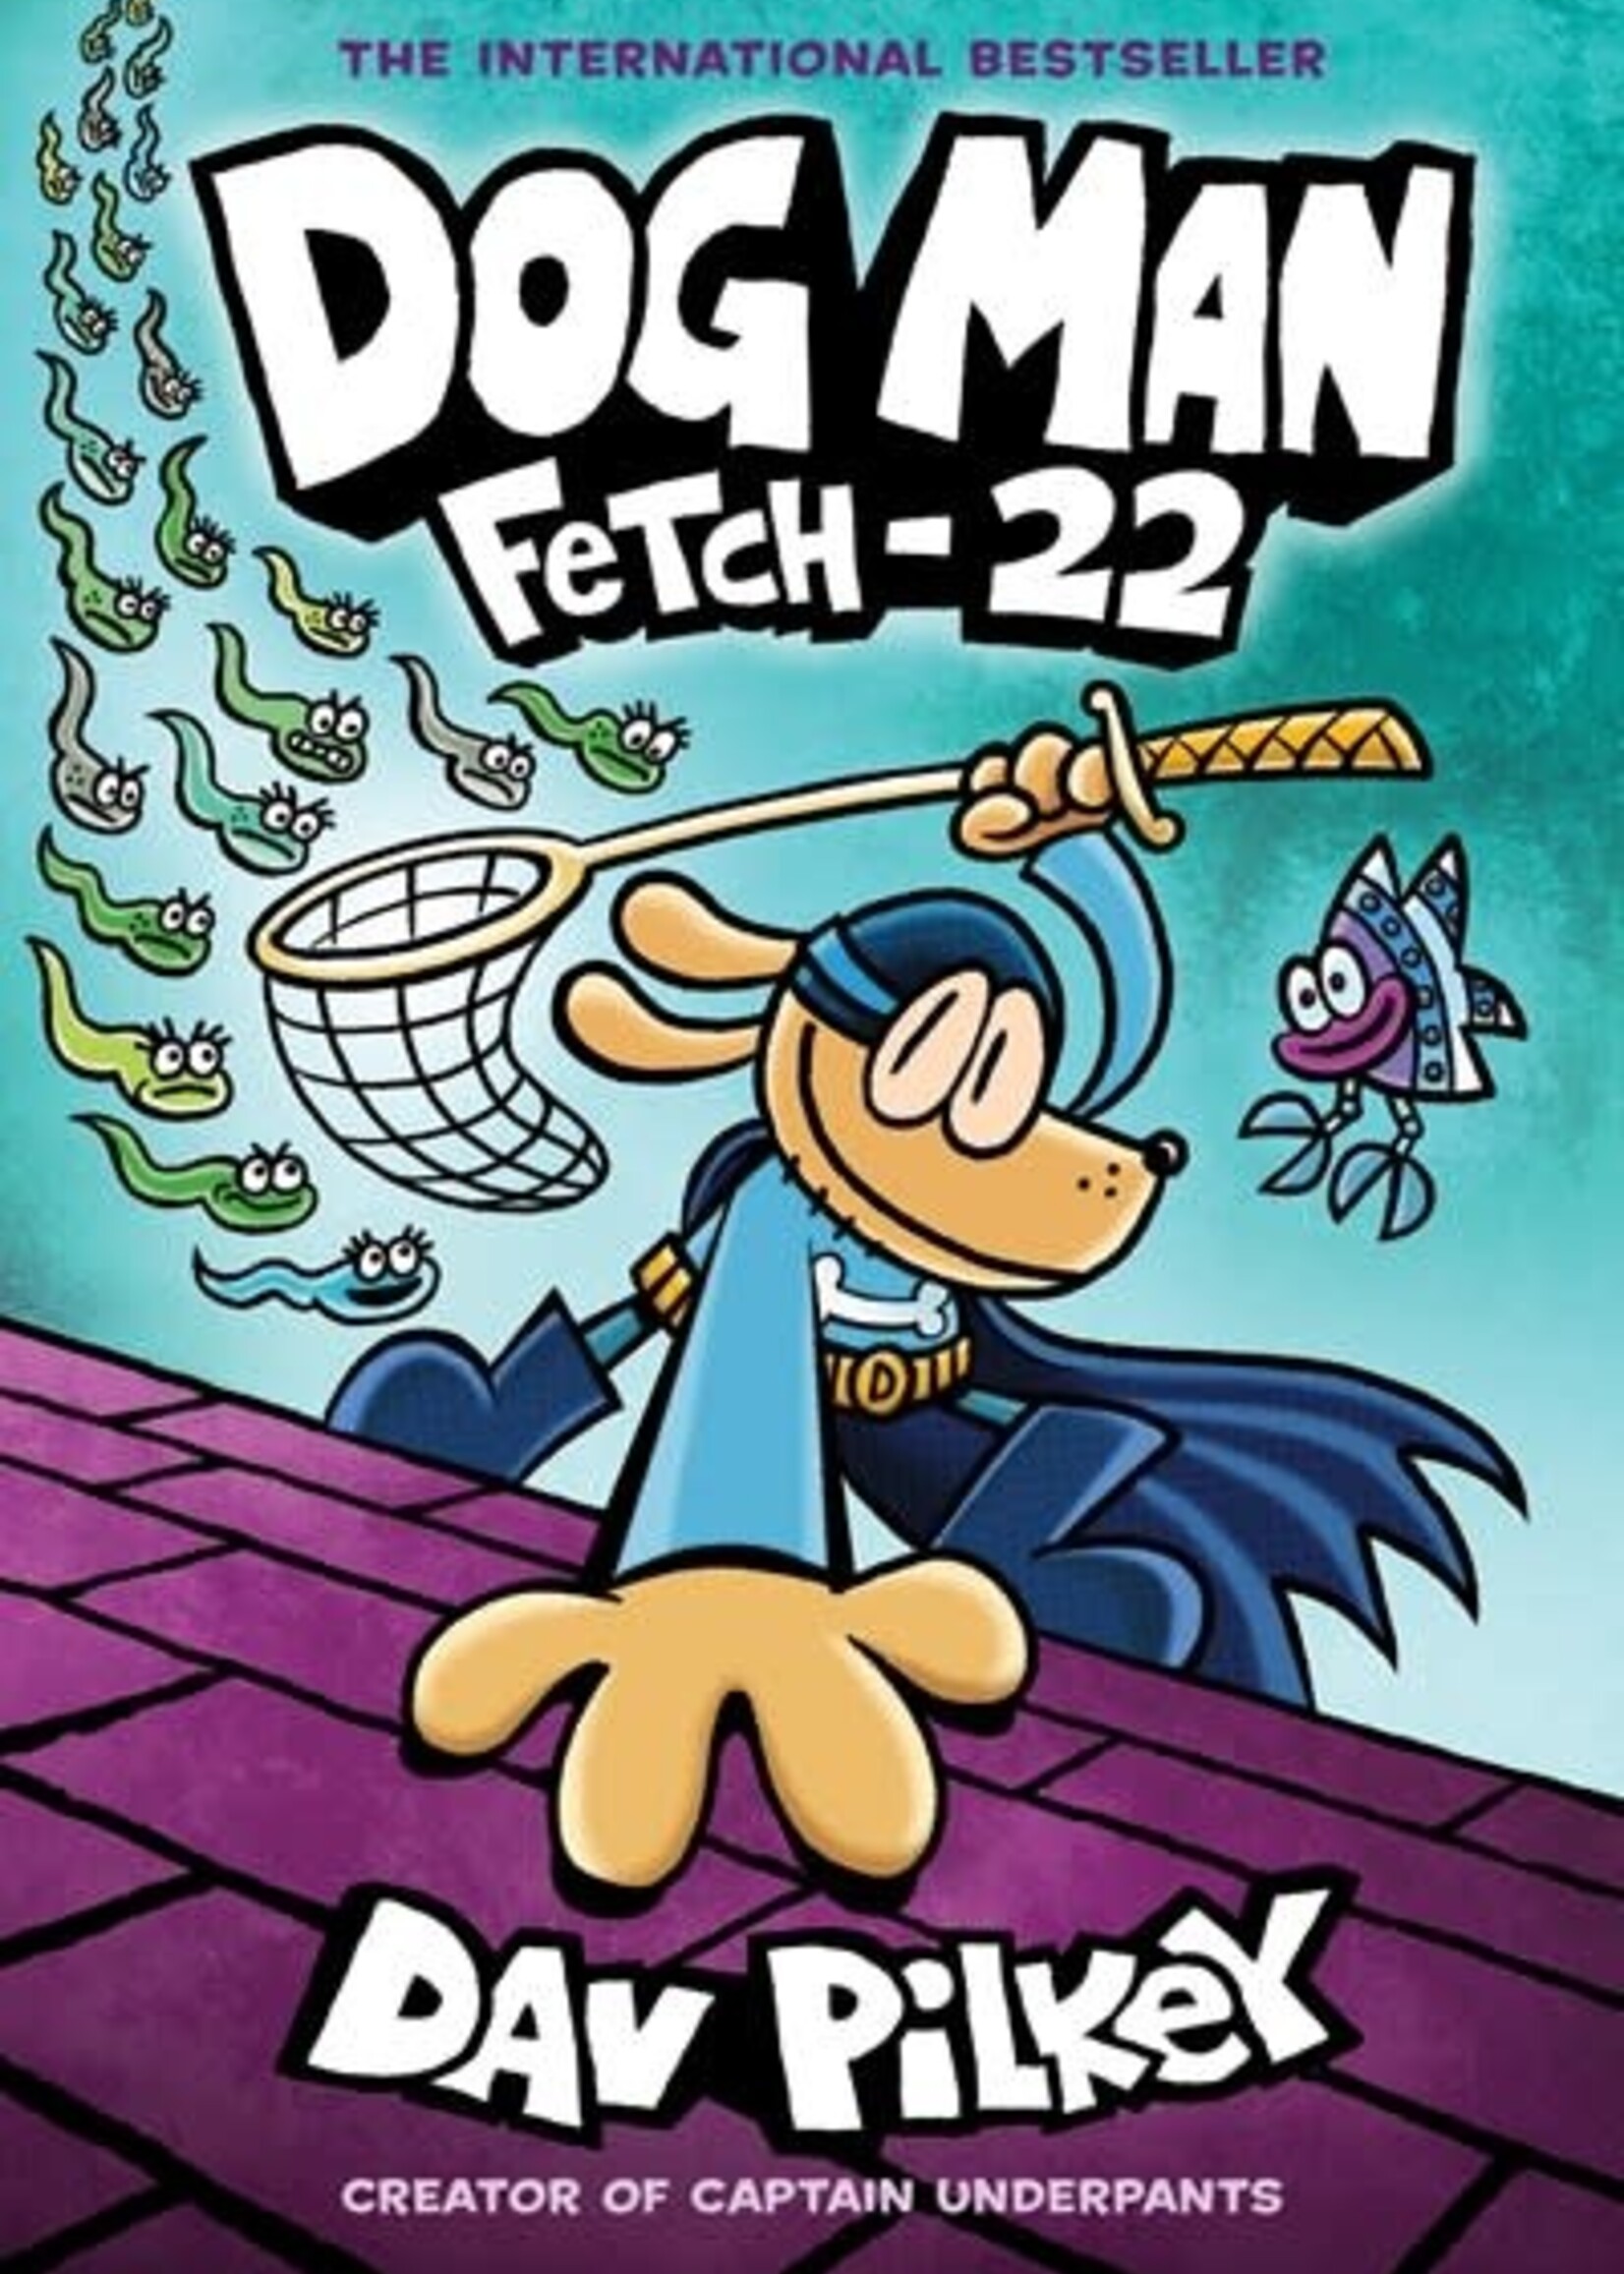 Dog Man 8 Fetch-22